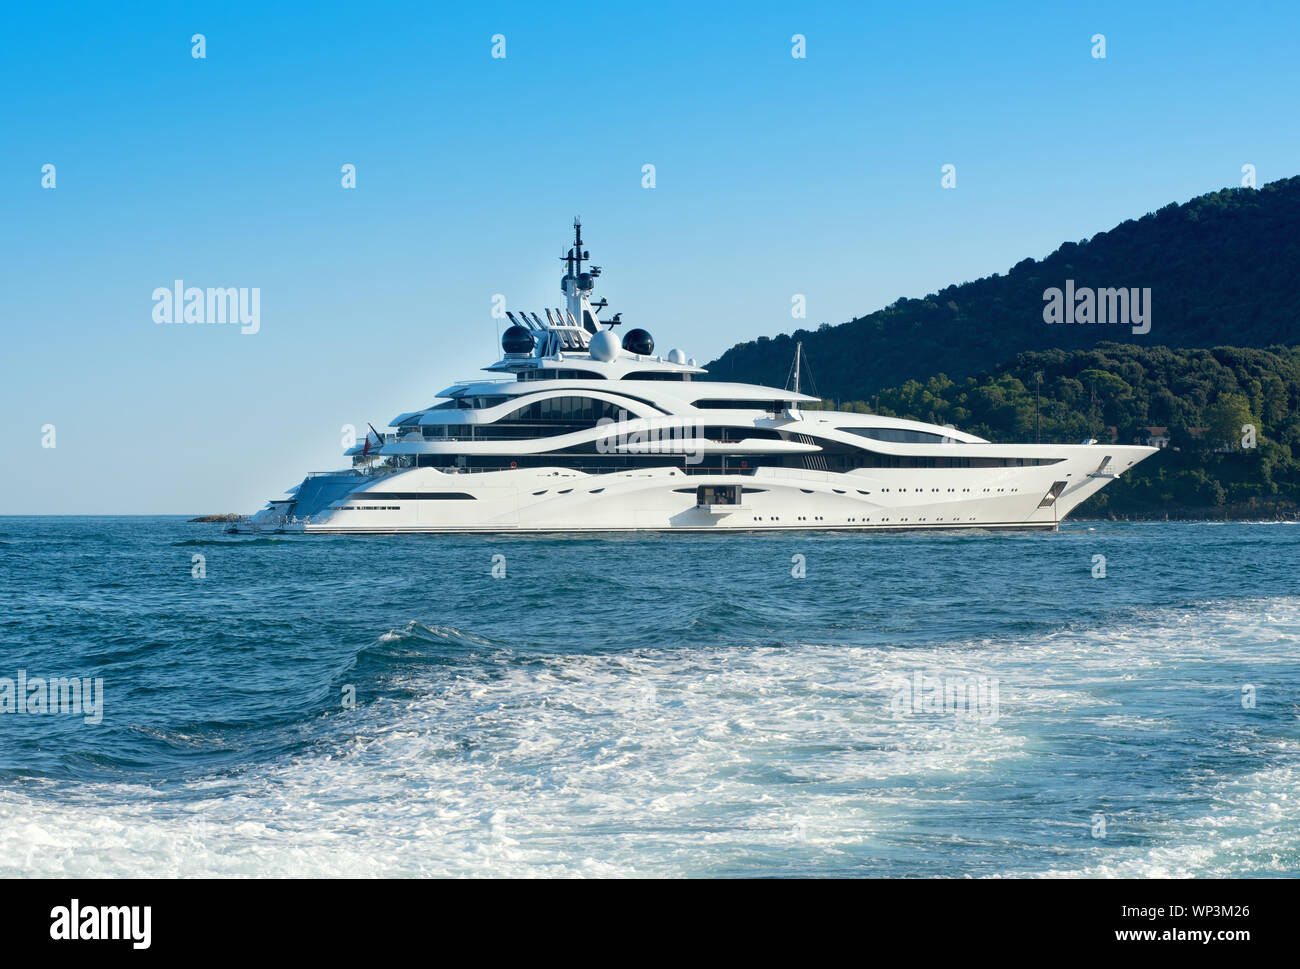 Enorme luxury motor yacht offshore di crociera in un oceano di calma passando una costa boscosa visualizzati sulla scia di un passaggio nave Foto Stock